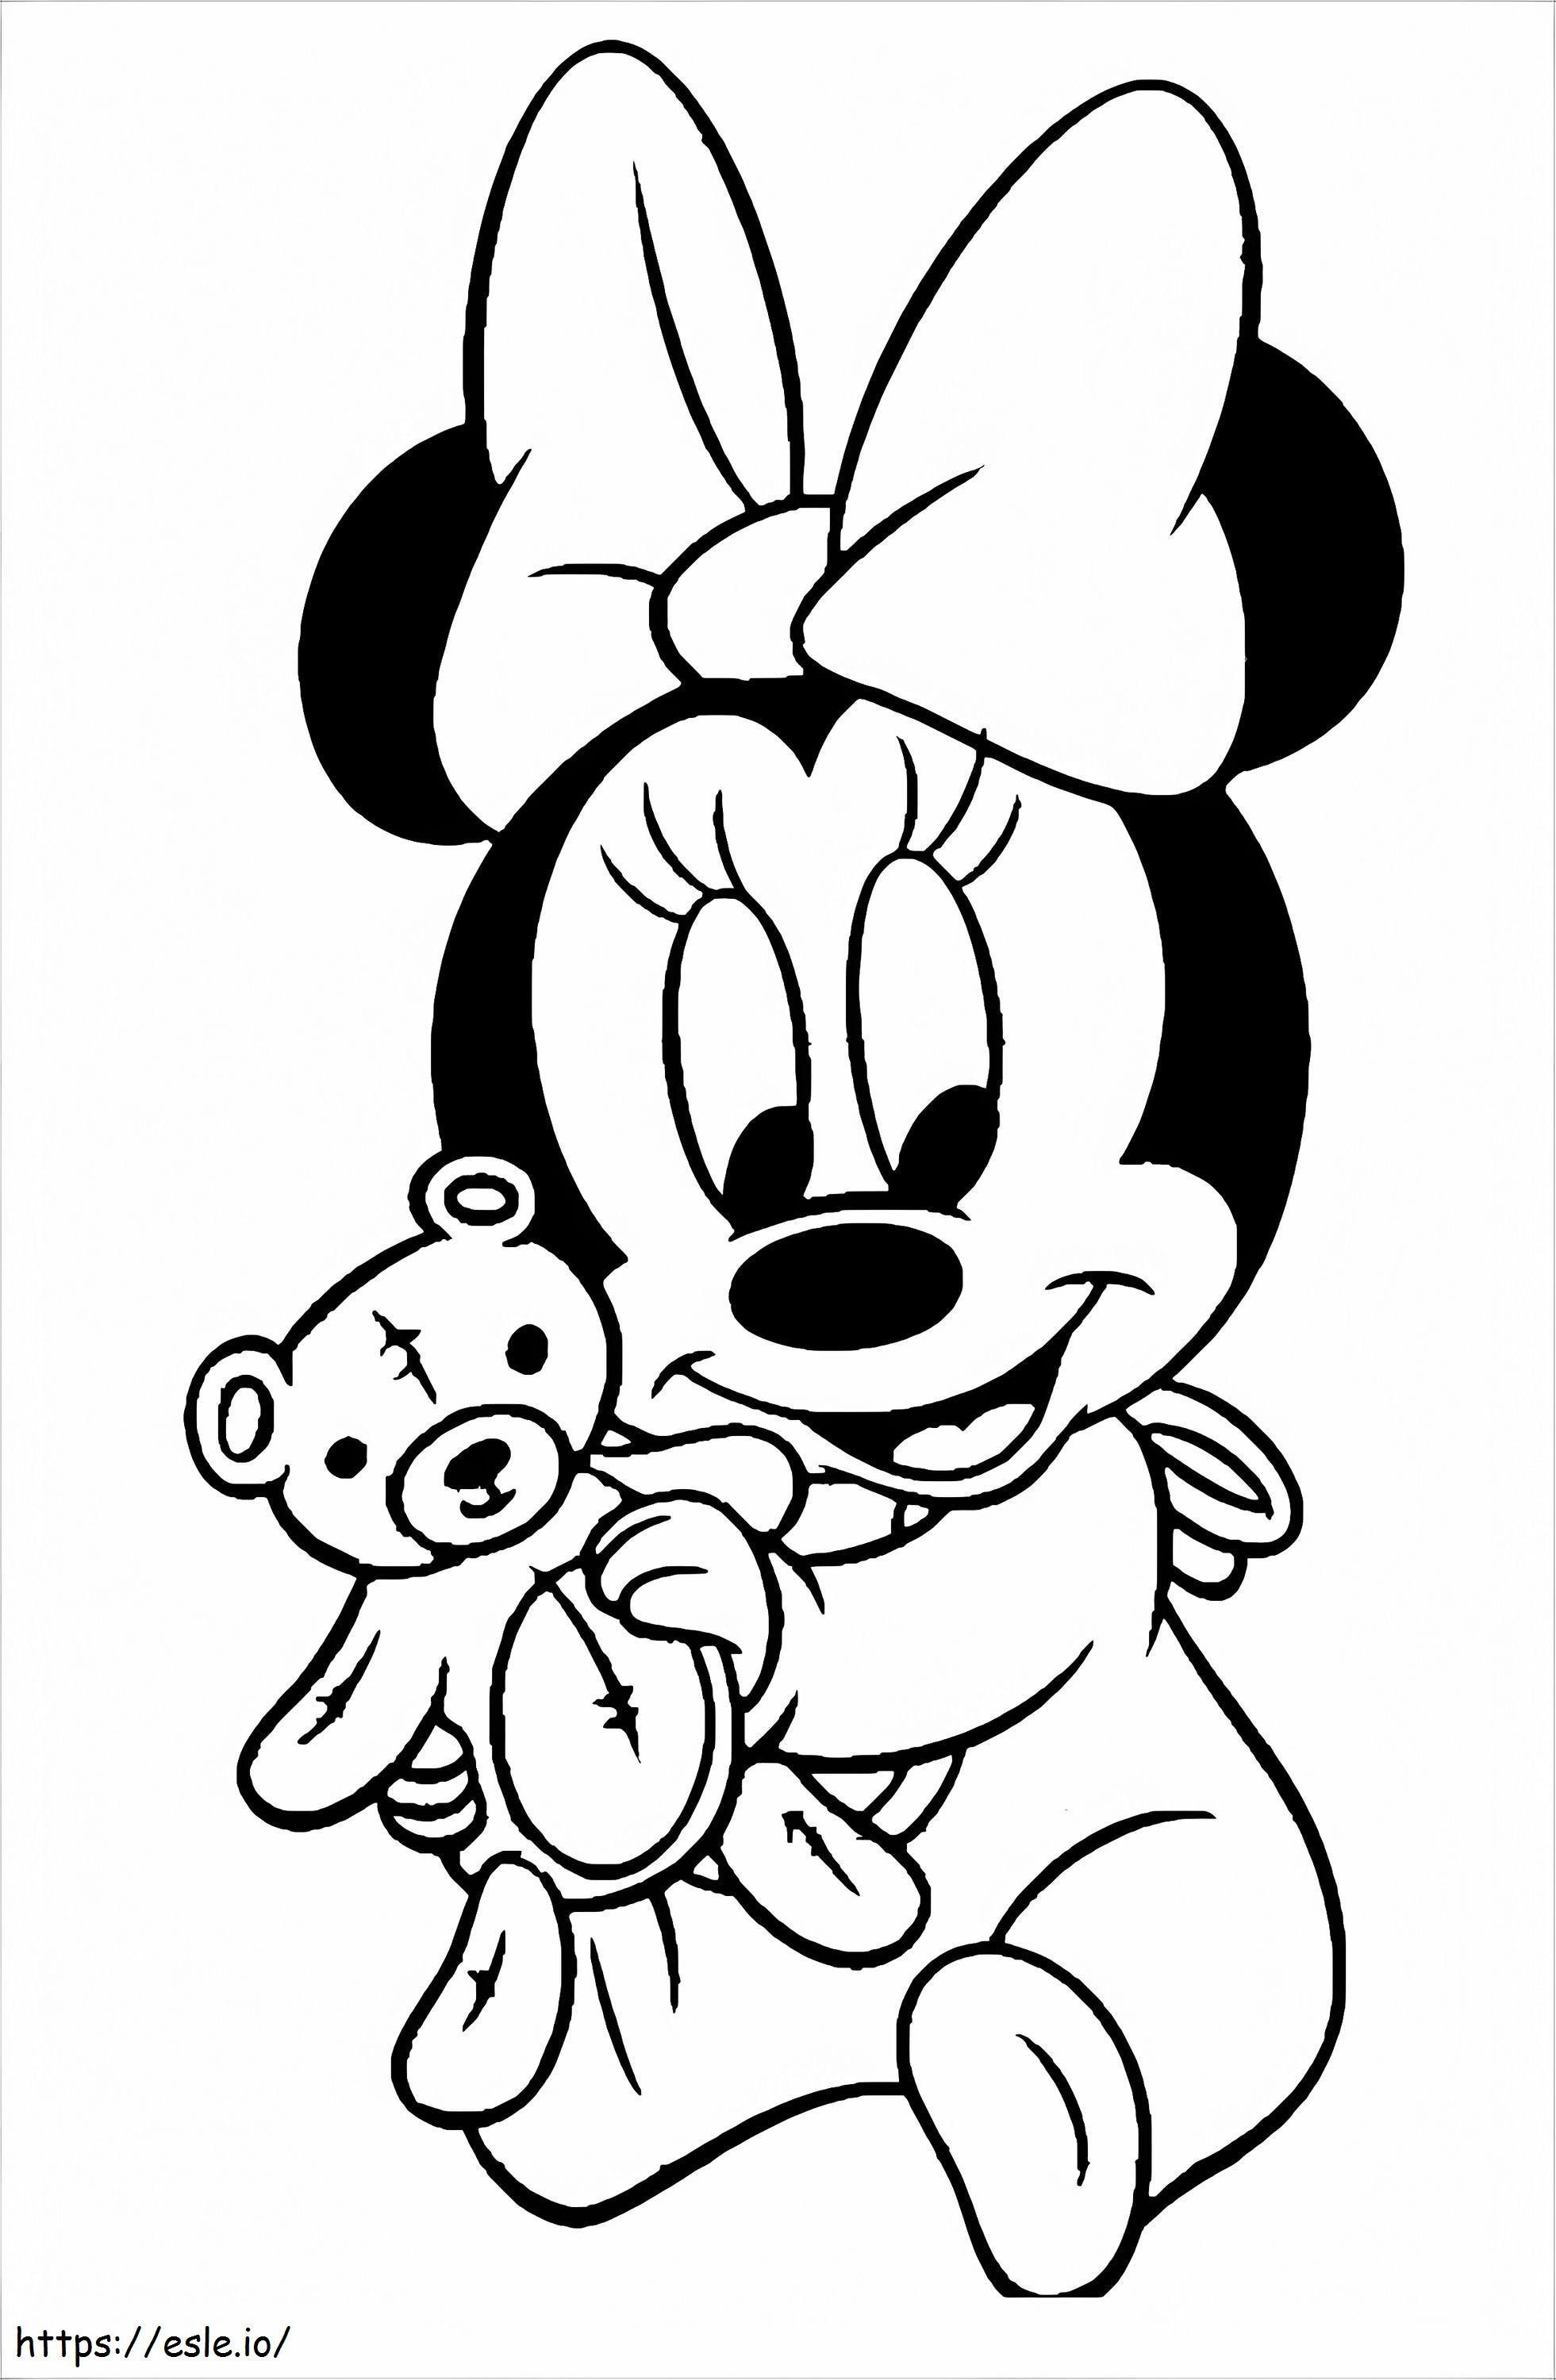 1532138954 Teddy A4'lü Minnie Mouse boyama